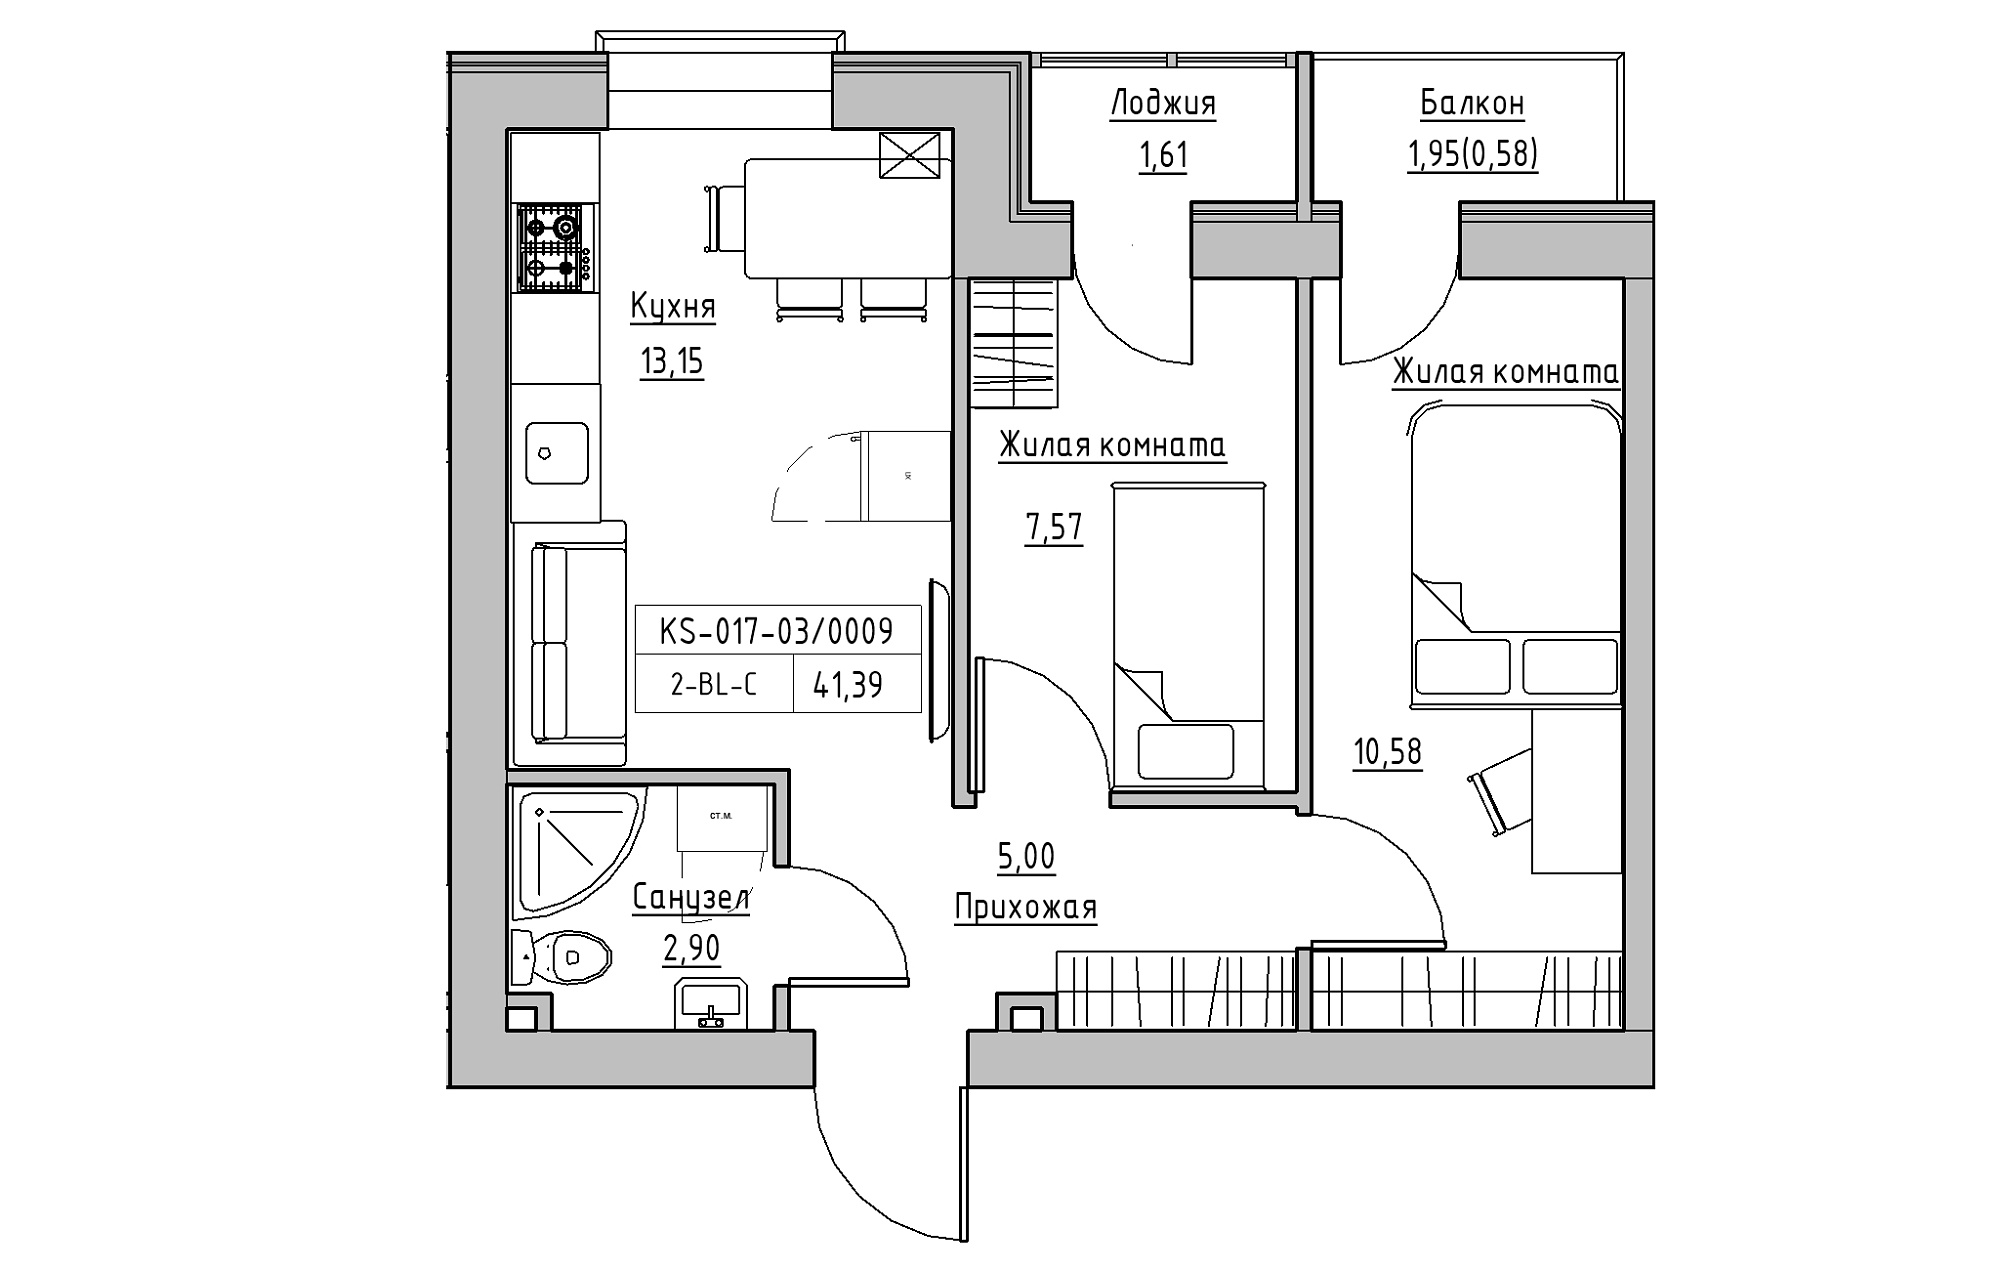 Планировка 2-к квартира площей 41.39м2, KS-017-03/0009.